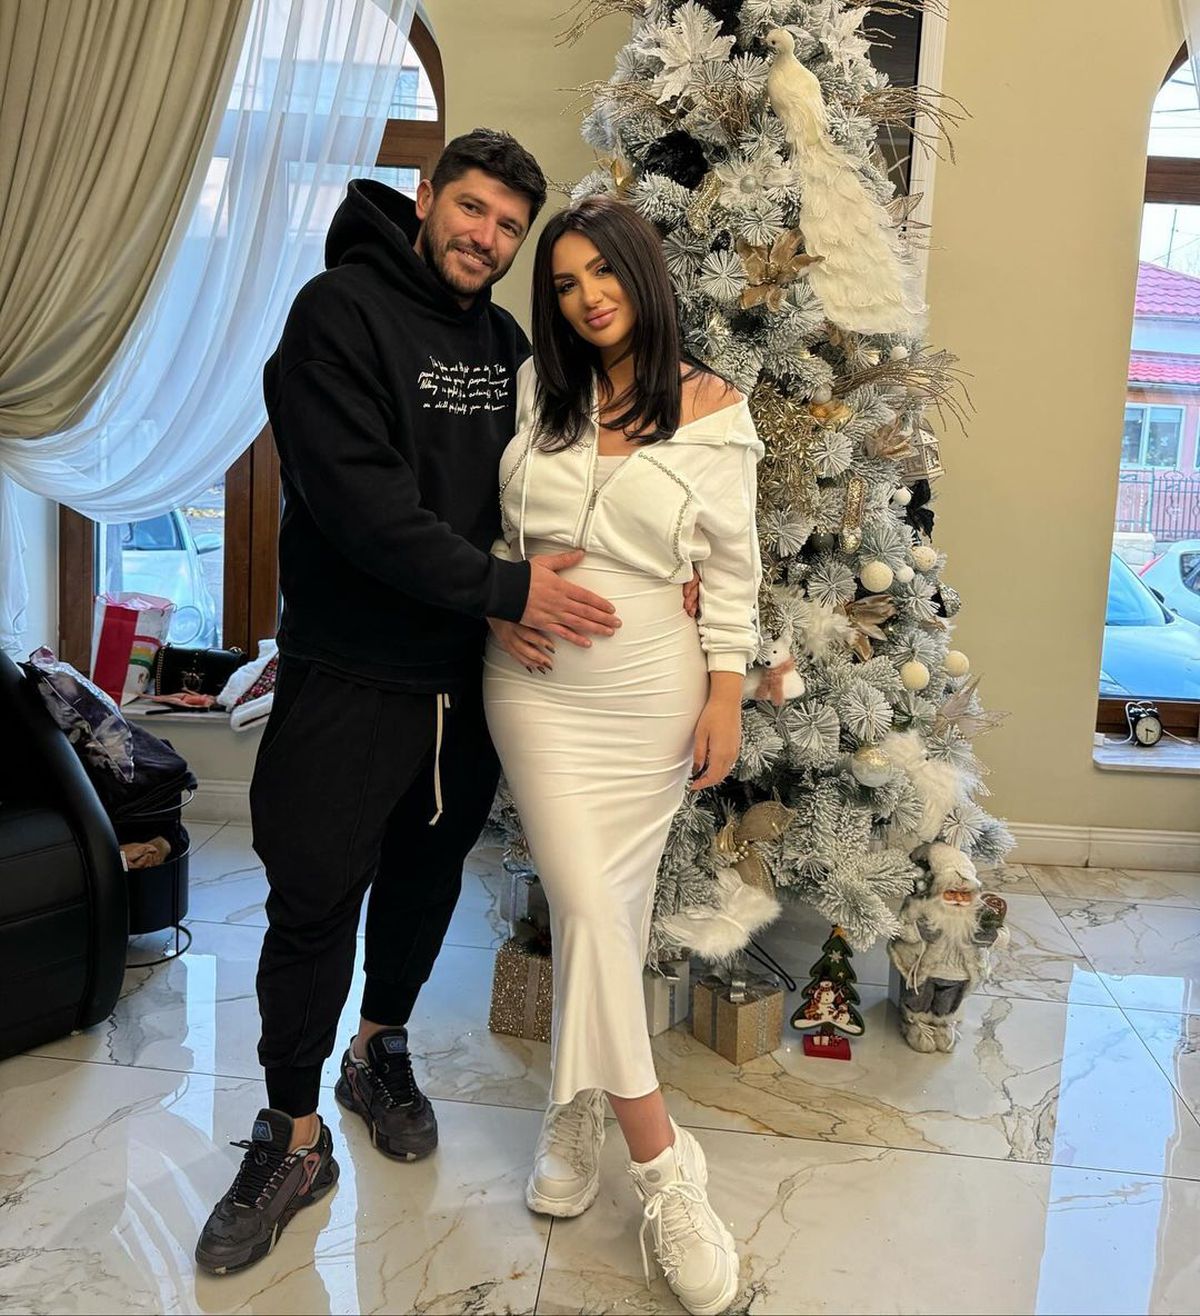 Cristi Tănase a devenit tată » Soția fostului fotbalist, Adina Maria, a născut: „Totul!”